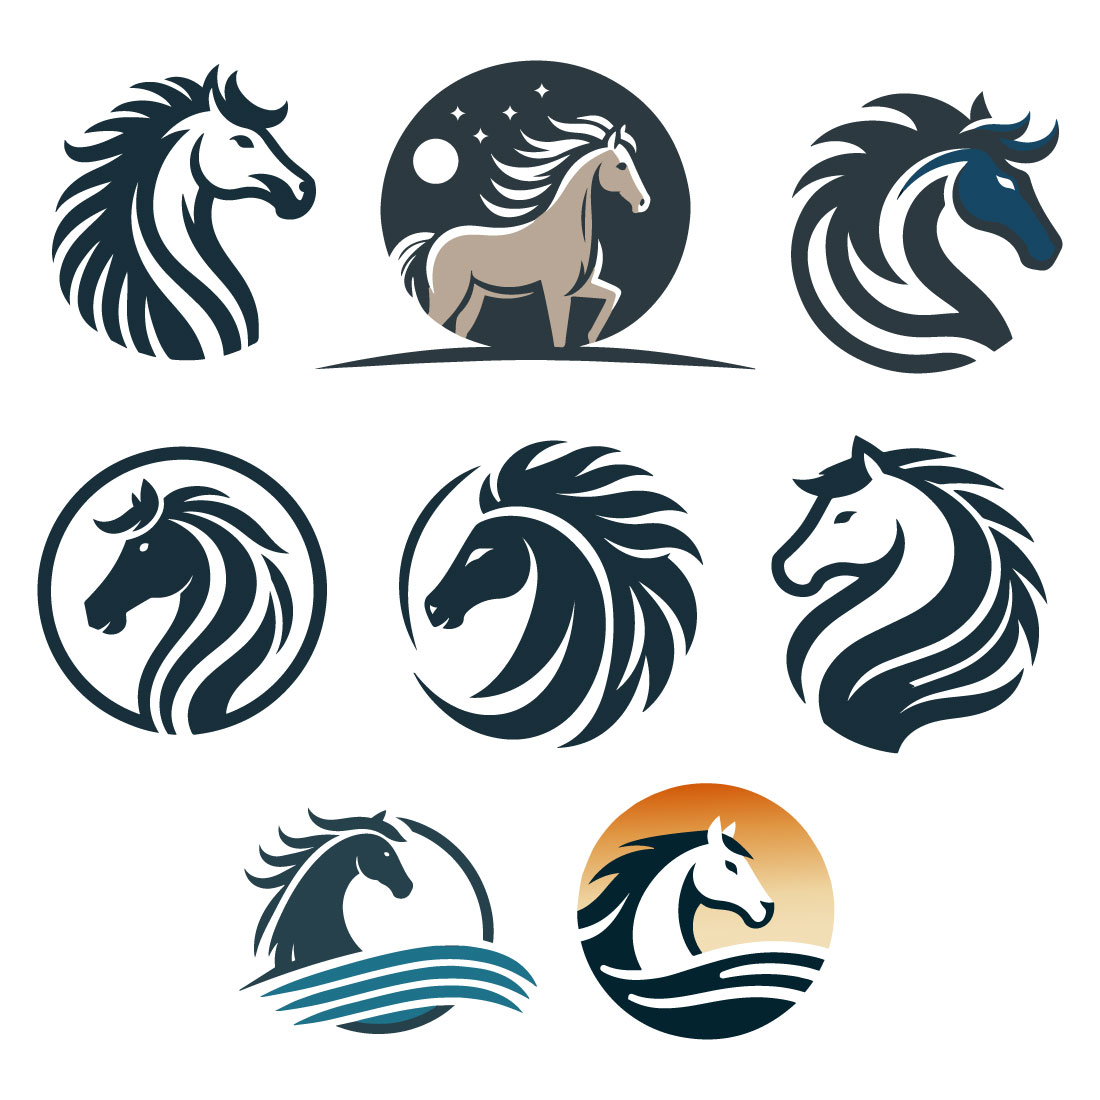 8 horse logos vector illustration 864